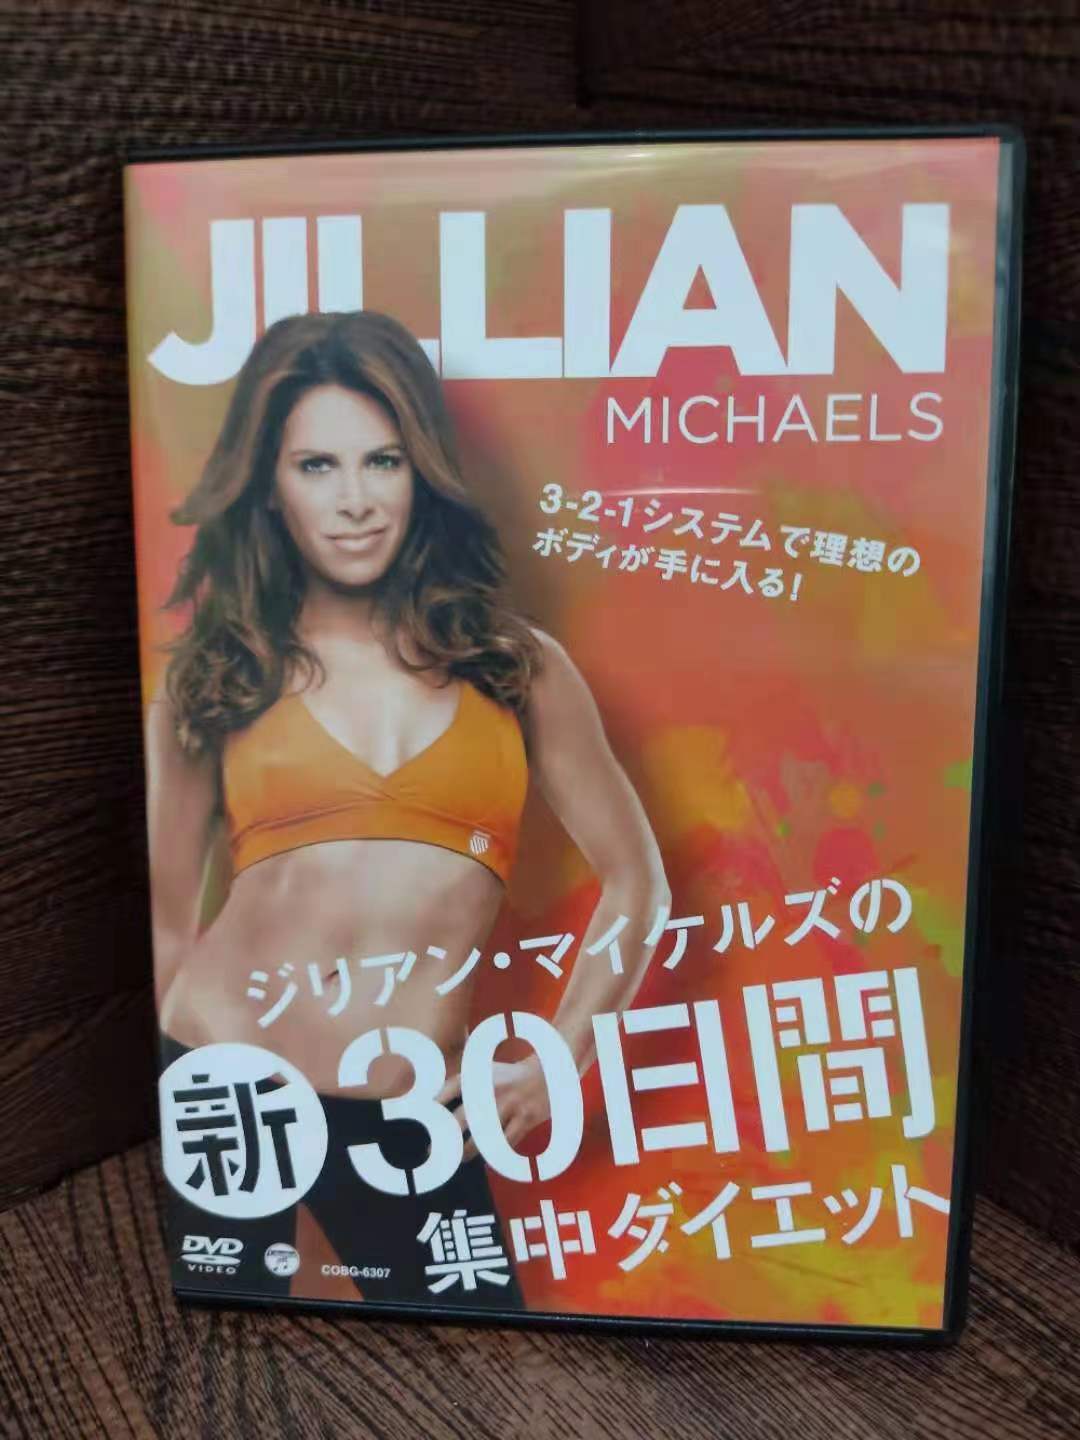 ジリアン・マイケルズの30日間集中ダイエット - ブルーレイ